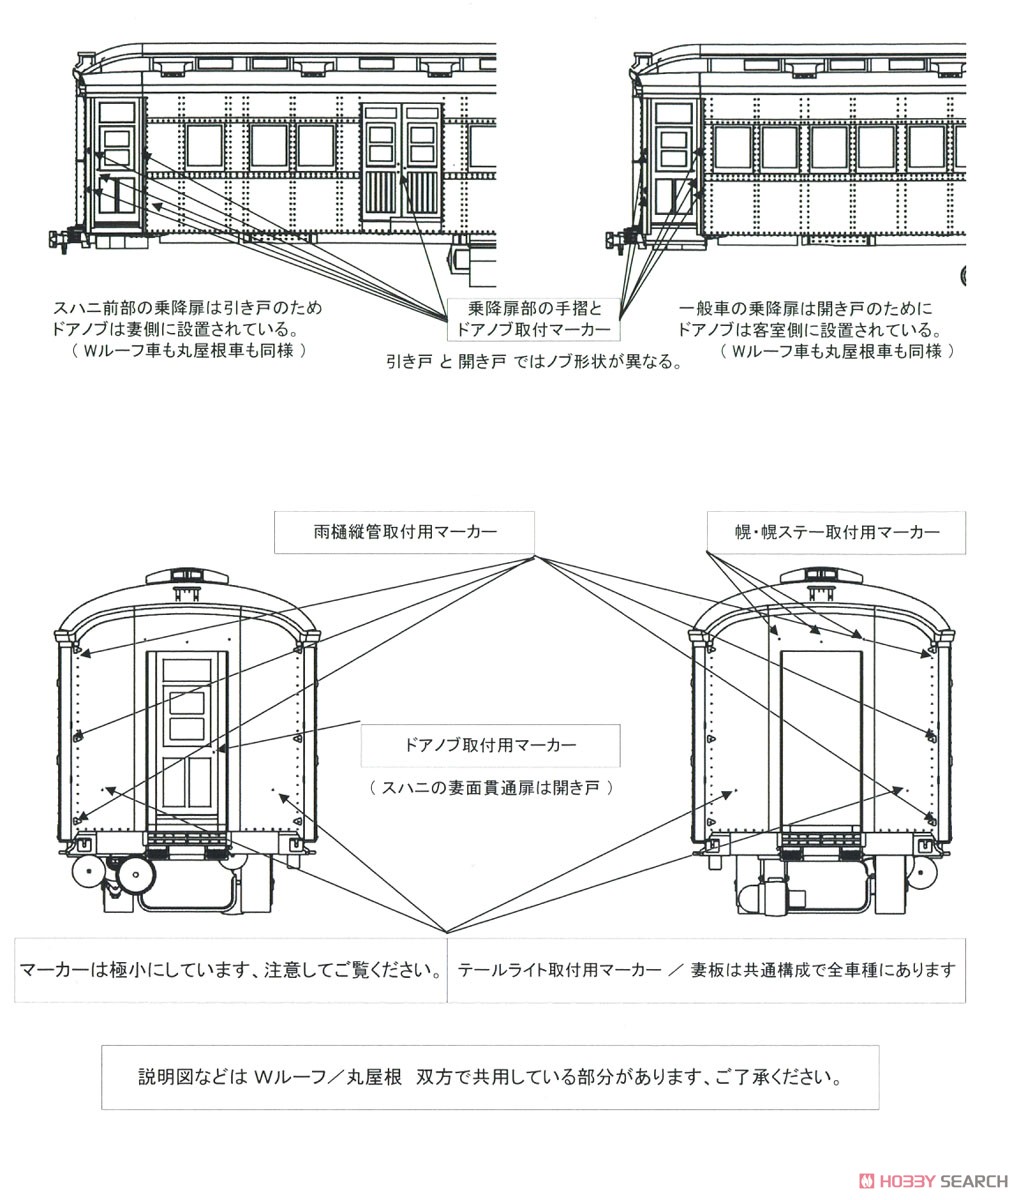 16番(HO) スハニ35700 (丸屋根 スハニ31形) プラ製ベースキット (組み立てキット) (鉄道模型) 設計図8